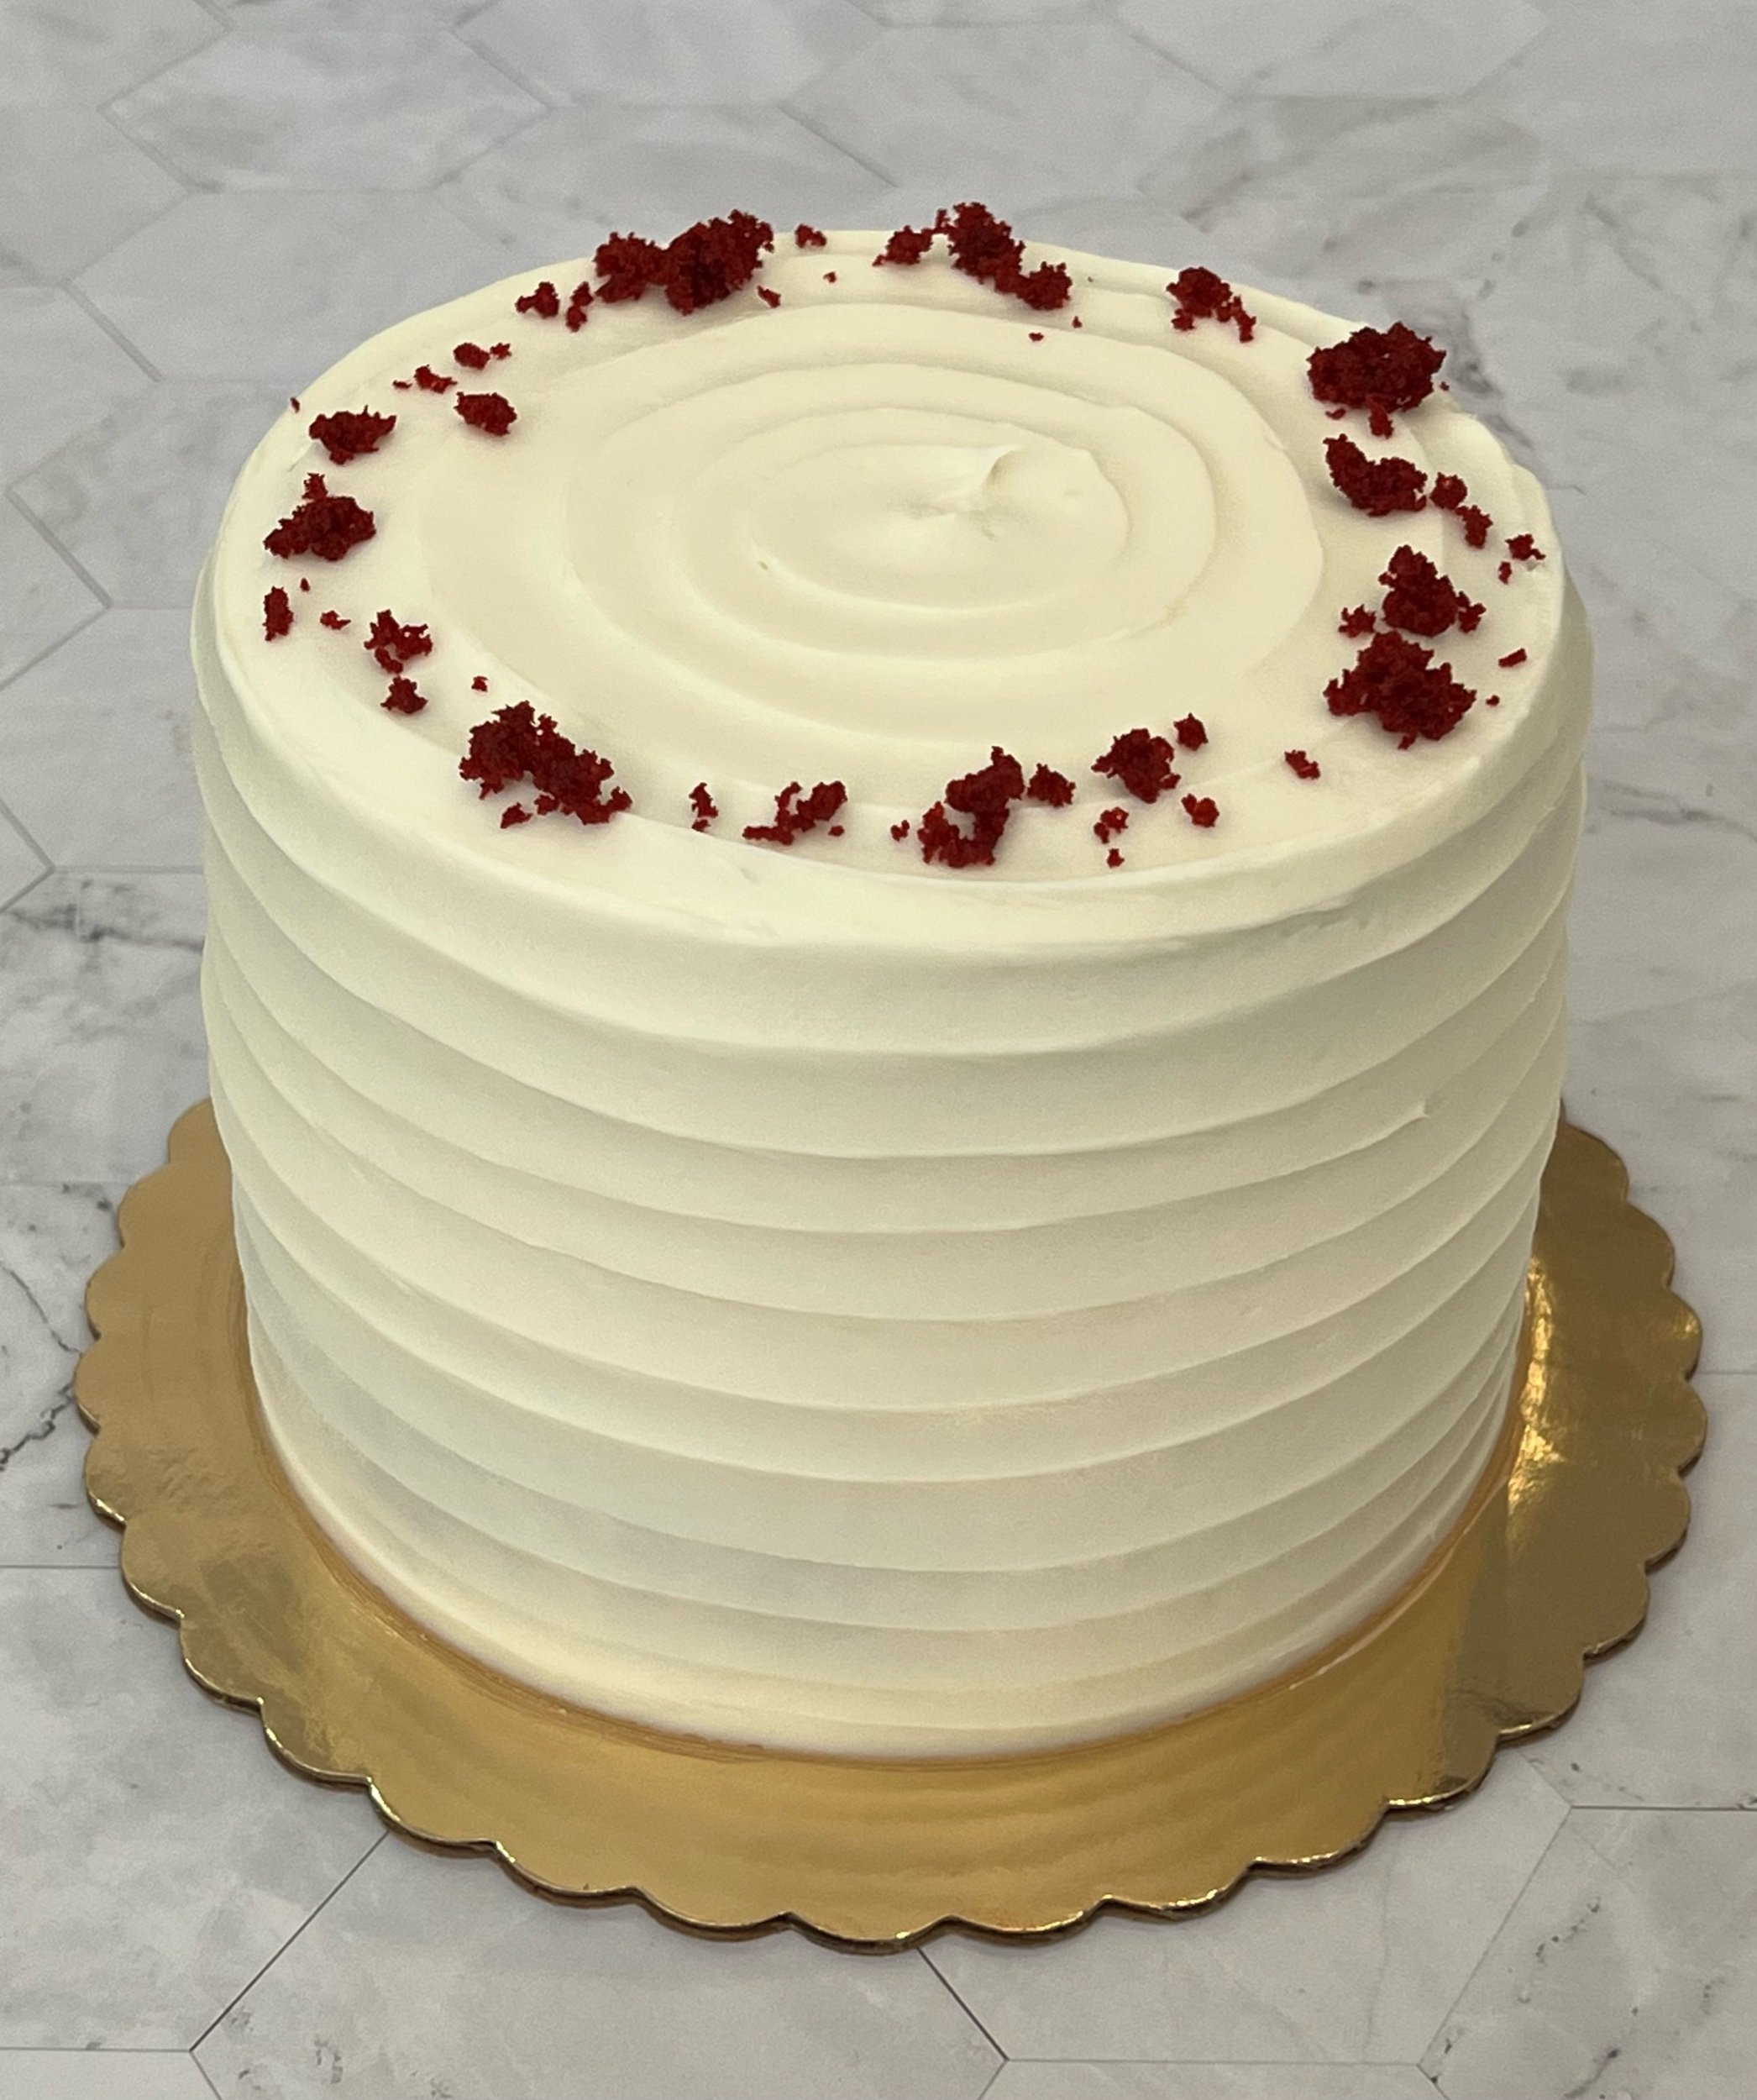 RED VELVET - red velvet cake, cream cheese icing